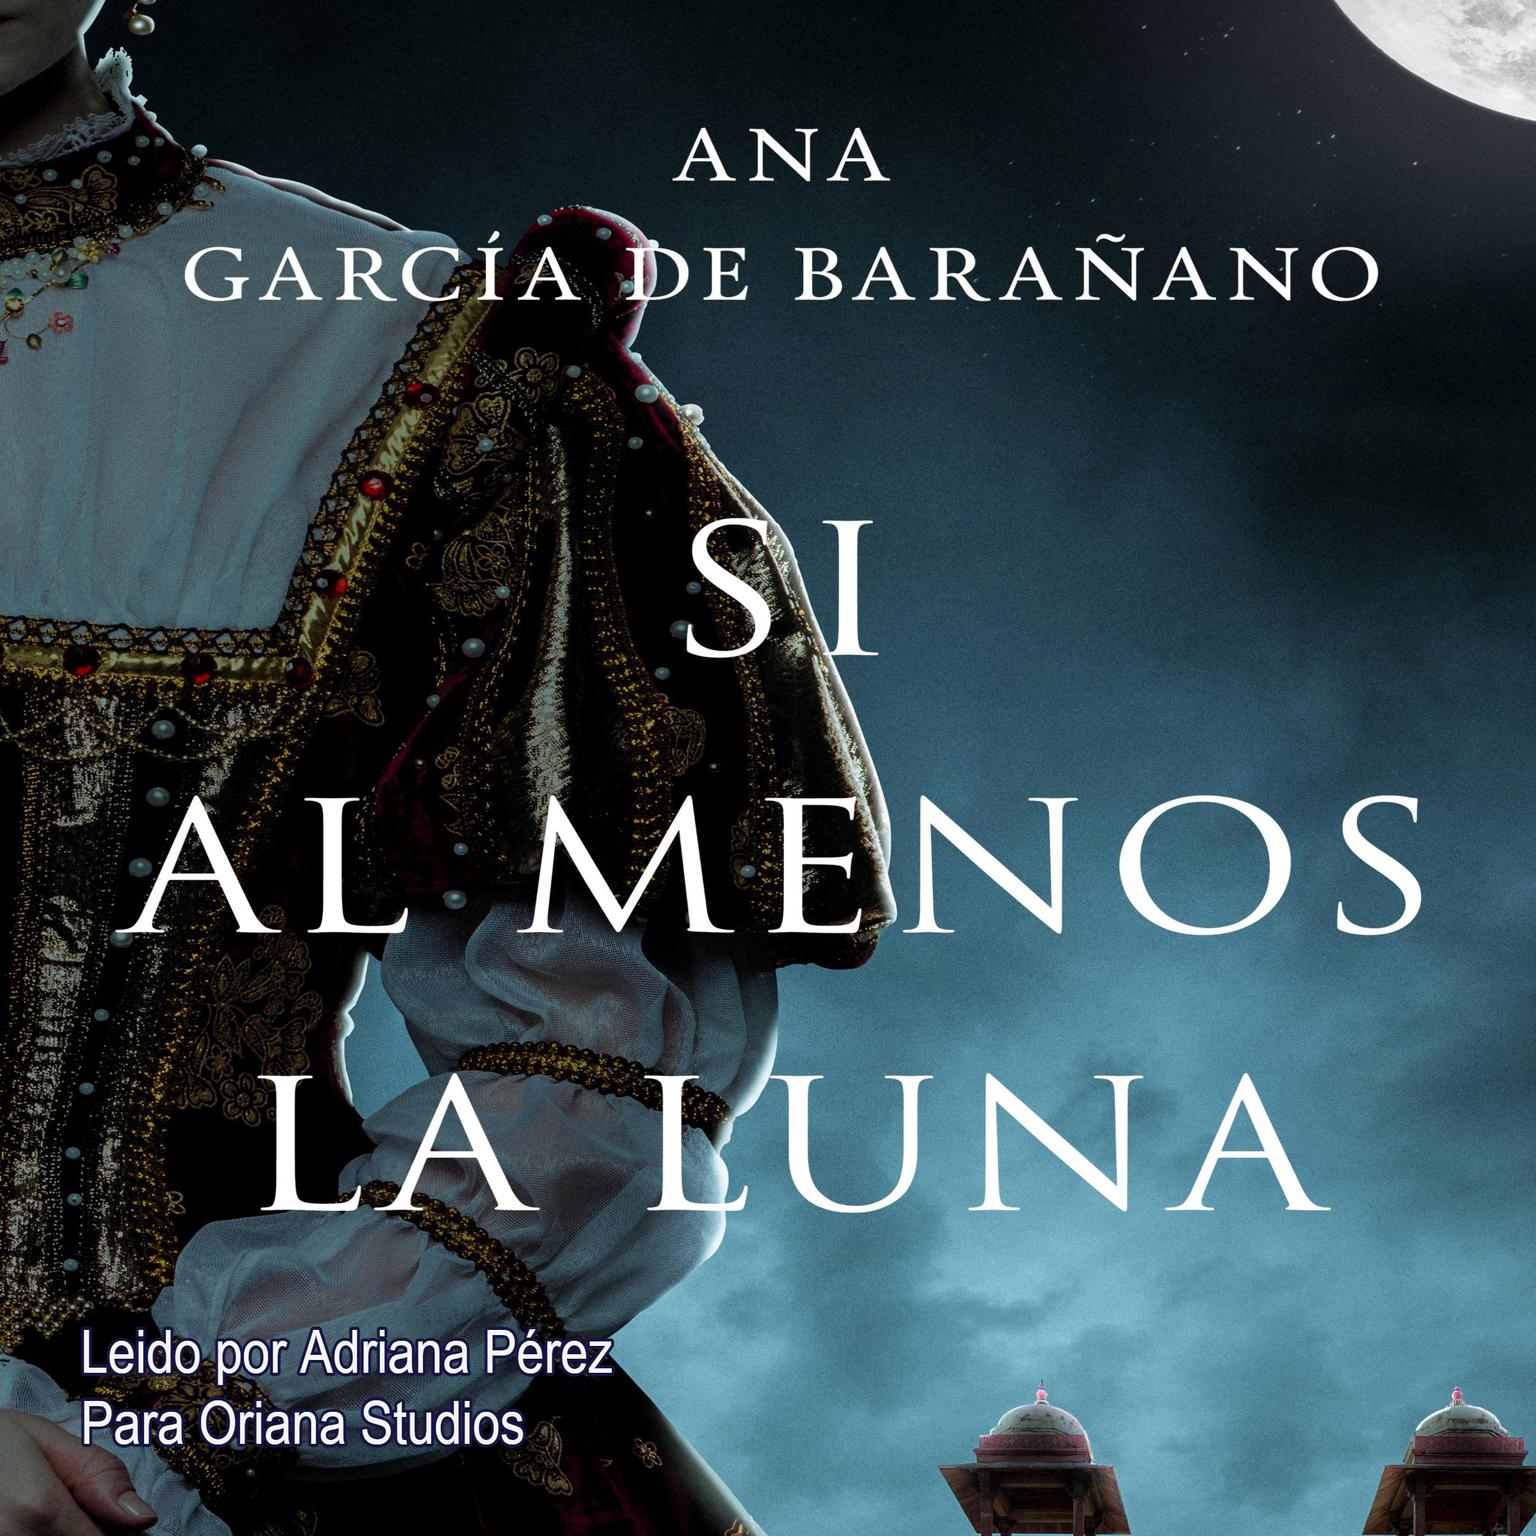 Si al menos la luna Audiobook, by Ana Garcia de Barañano